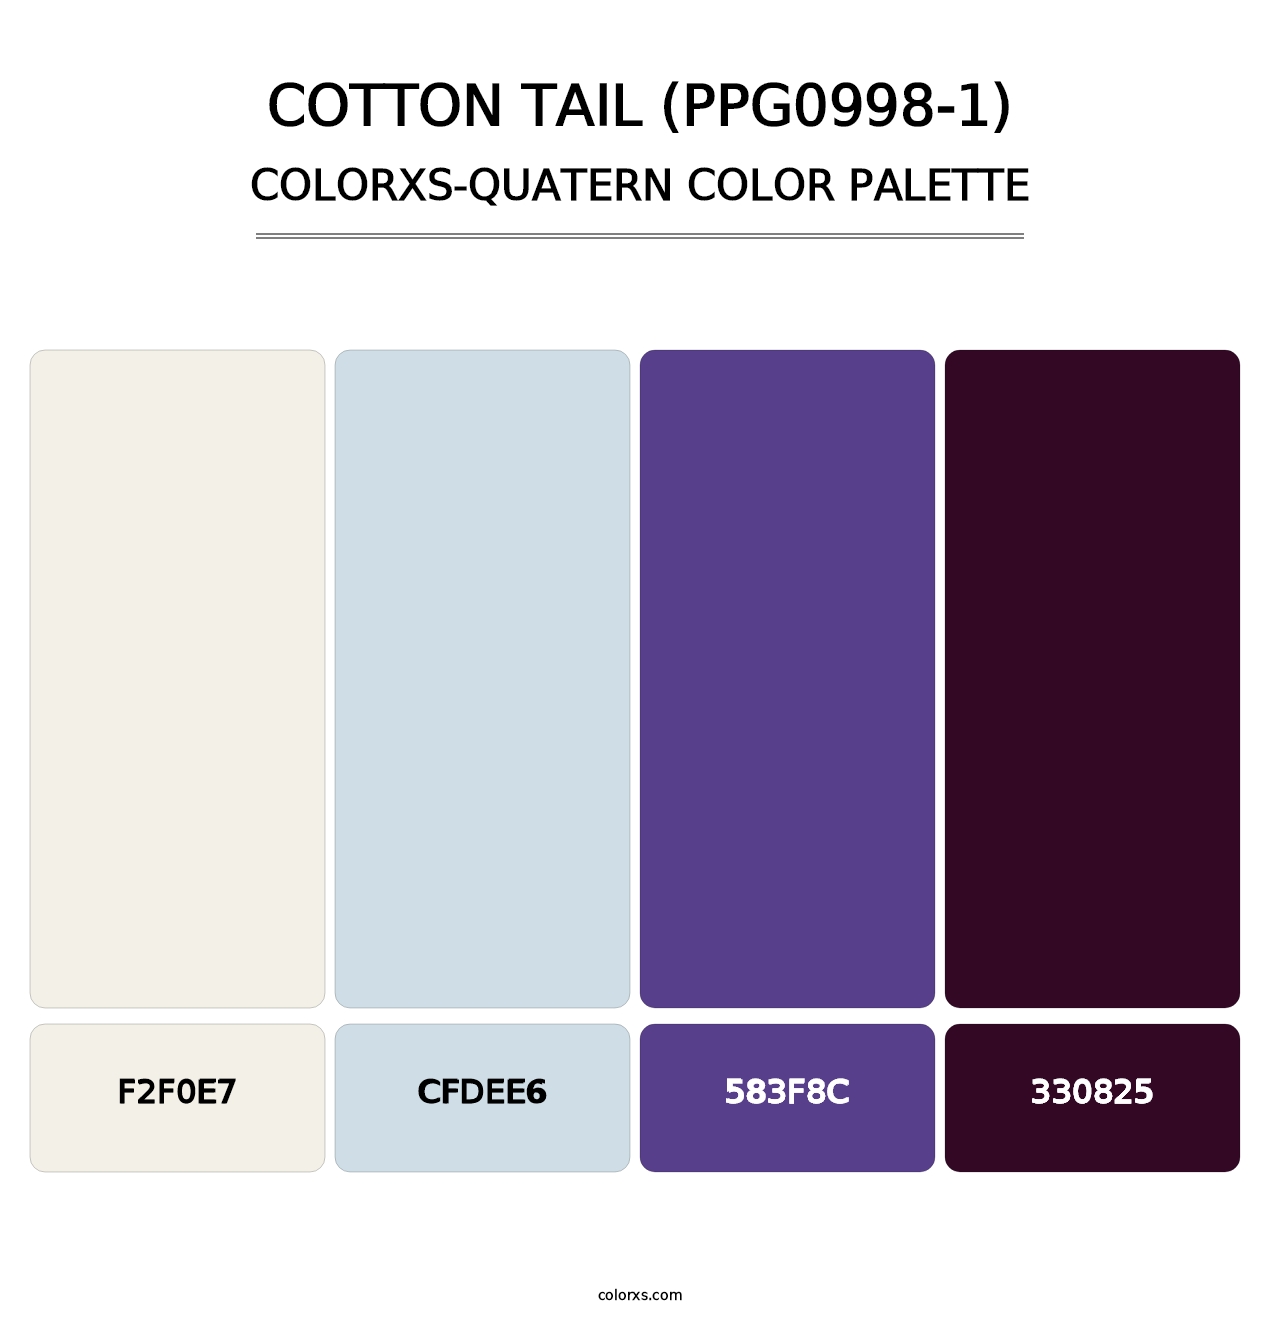 Cotton Tail (PPG0998-1) - Colorxs Quatern Palette